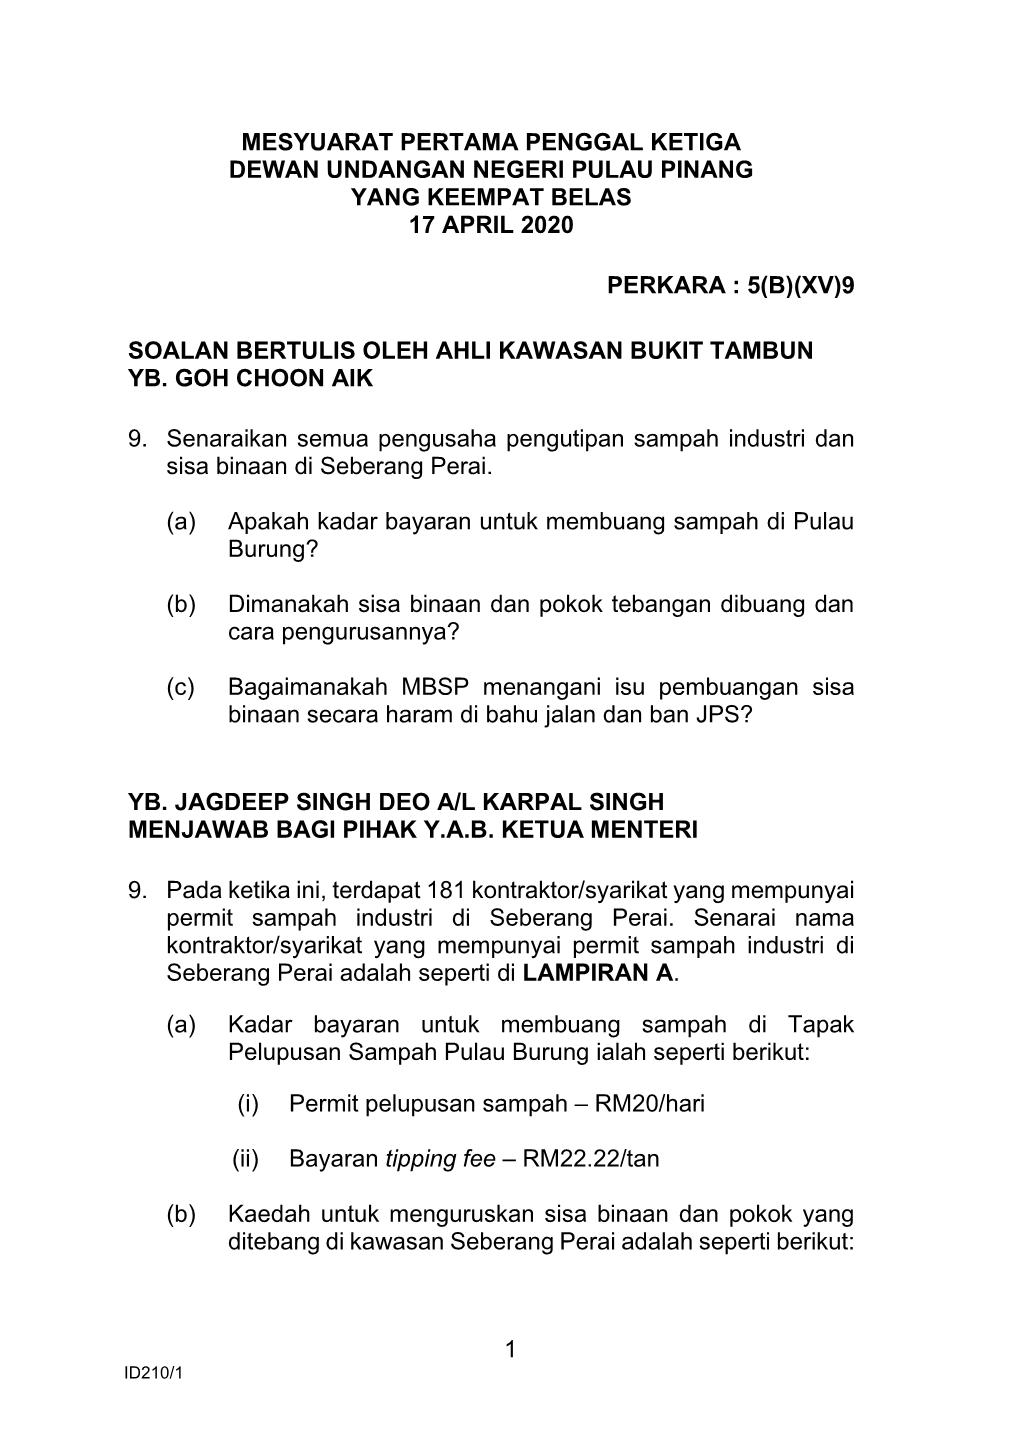 Mesyuarat Pertama Penggal Ketiga Dewan Undangan Negeri Pulau Pinang Yang Keempat Belas 17 April 2020